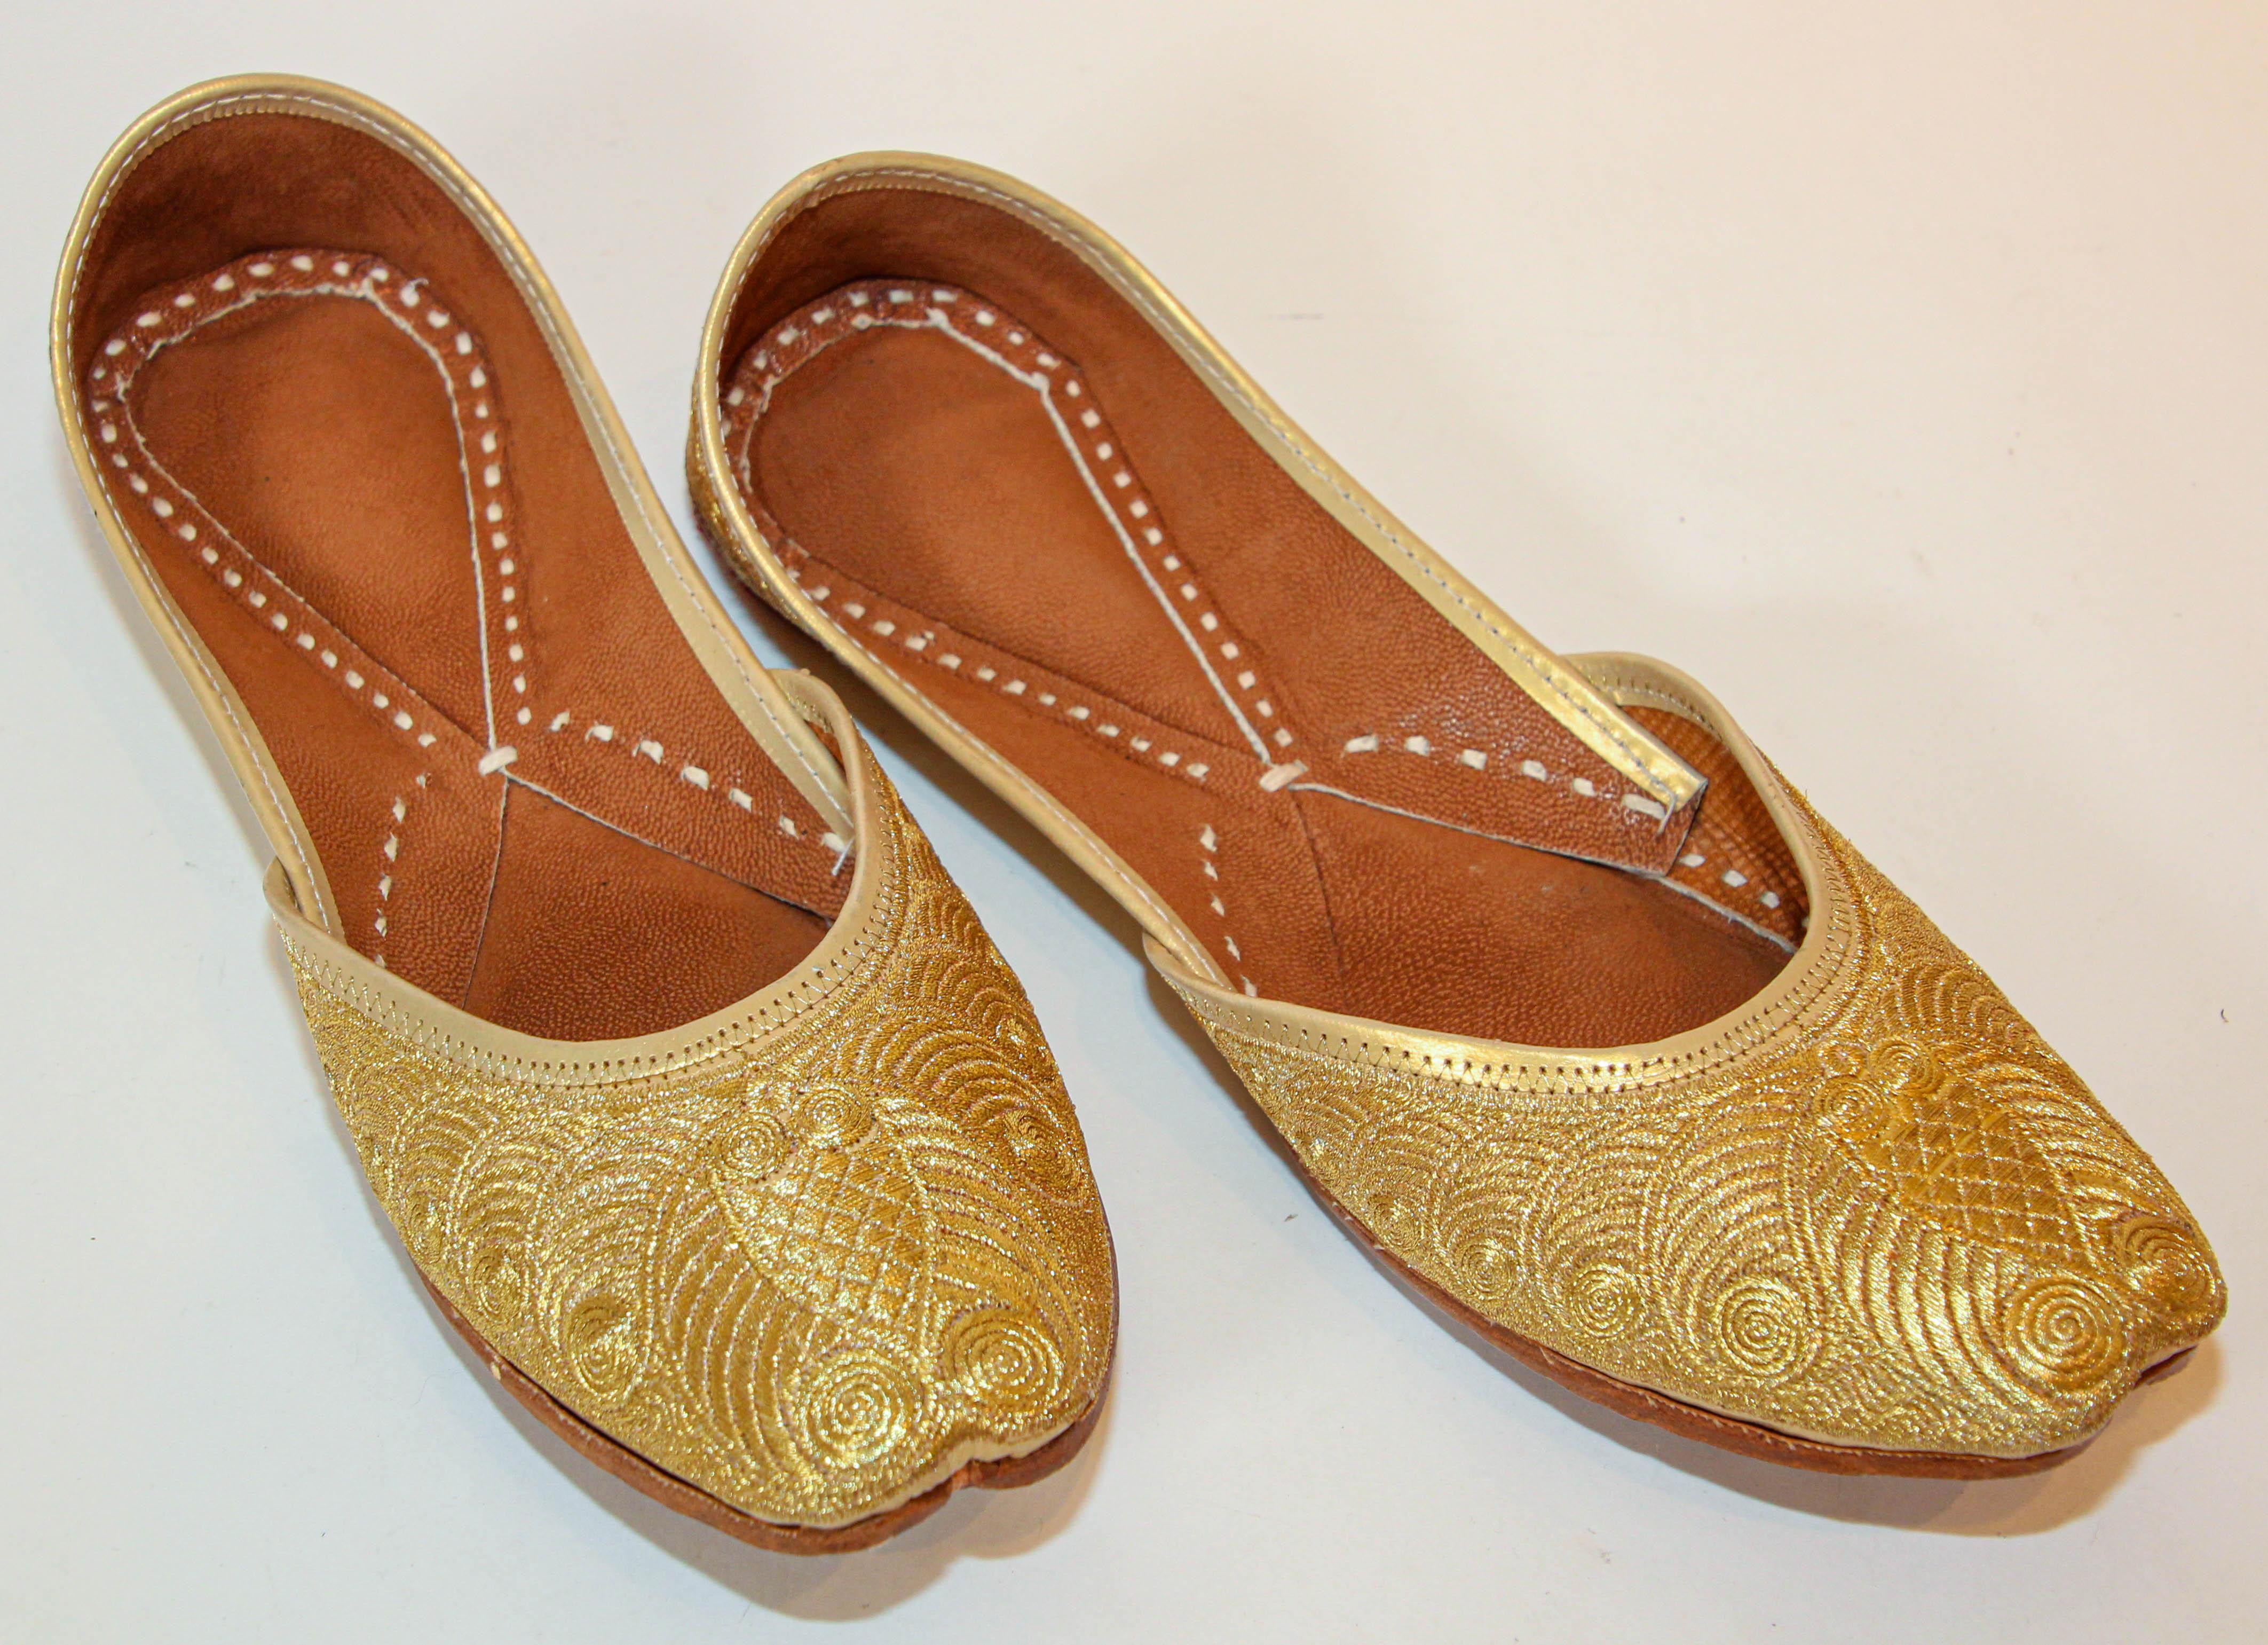 
Vintage 1970s Männer Gold Leder indischen Punjabi Jutti Hochzeit Schuhe.
Vintage handgenähte und handgefertigte Lederschuhe mit handgestickten, vergoldeten Metallfäden.
Erstaunliche goldbestickte traditionelle islamische indische Lederschuhe im